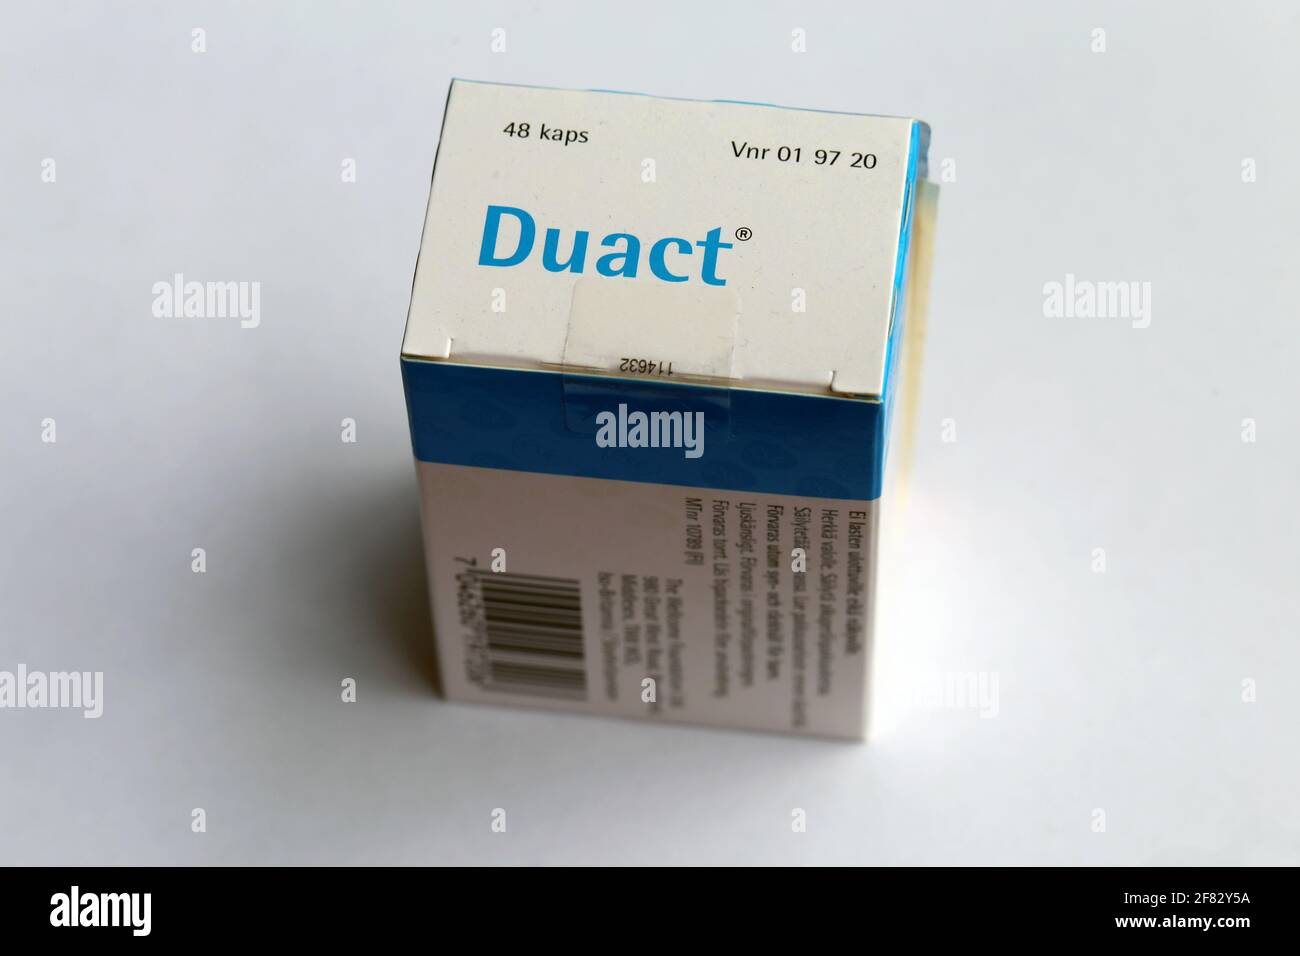 Duact-Kapseln - Allergie- und Kältemittel einschließlich Acrivastin 8 mg und Pseudoephroedin-Hydrochlorid 60 mg. Kann als Stimulans missbraucht werden. Stockfoto